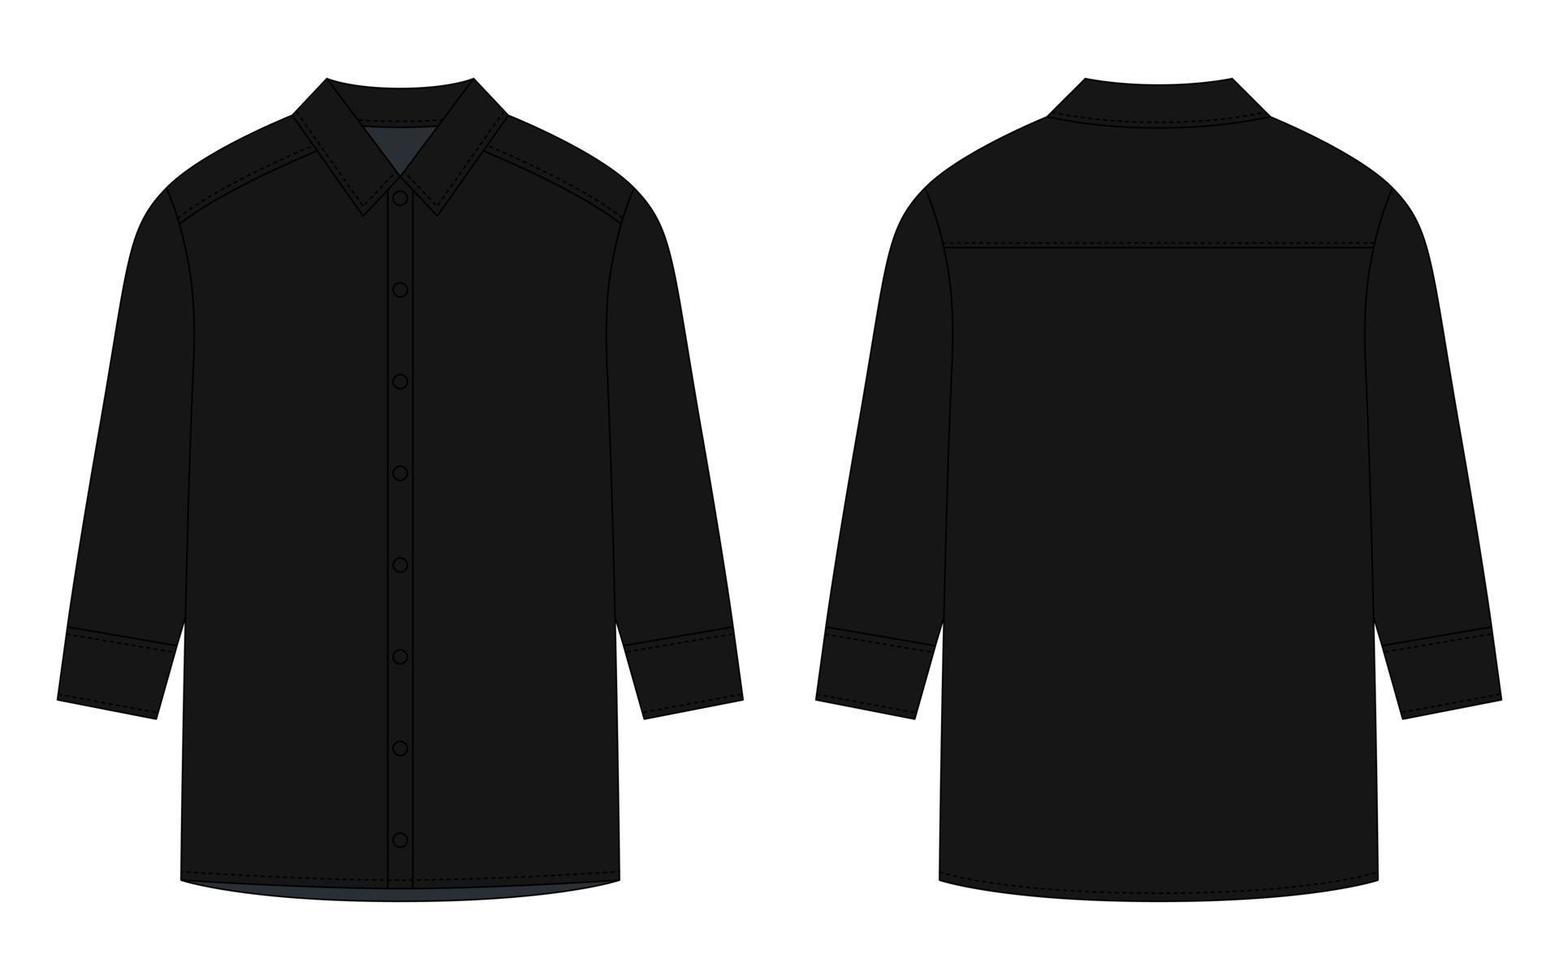 sovradimensionato camicia con lungo maniche e pulsanti tecnico schizzo. nero colore. vettore